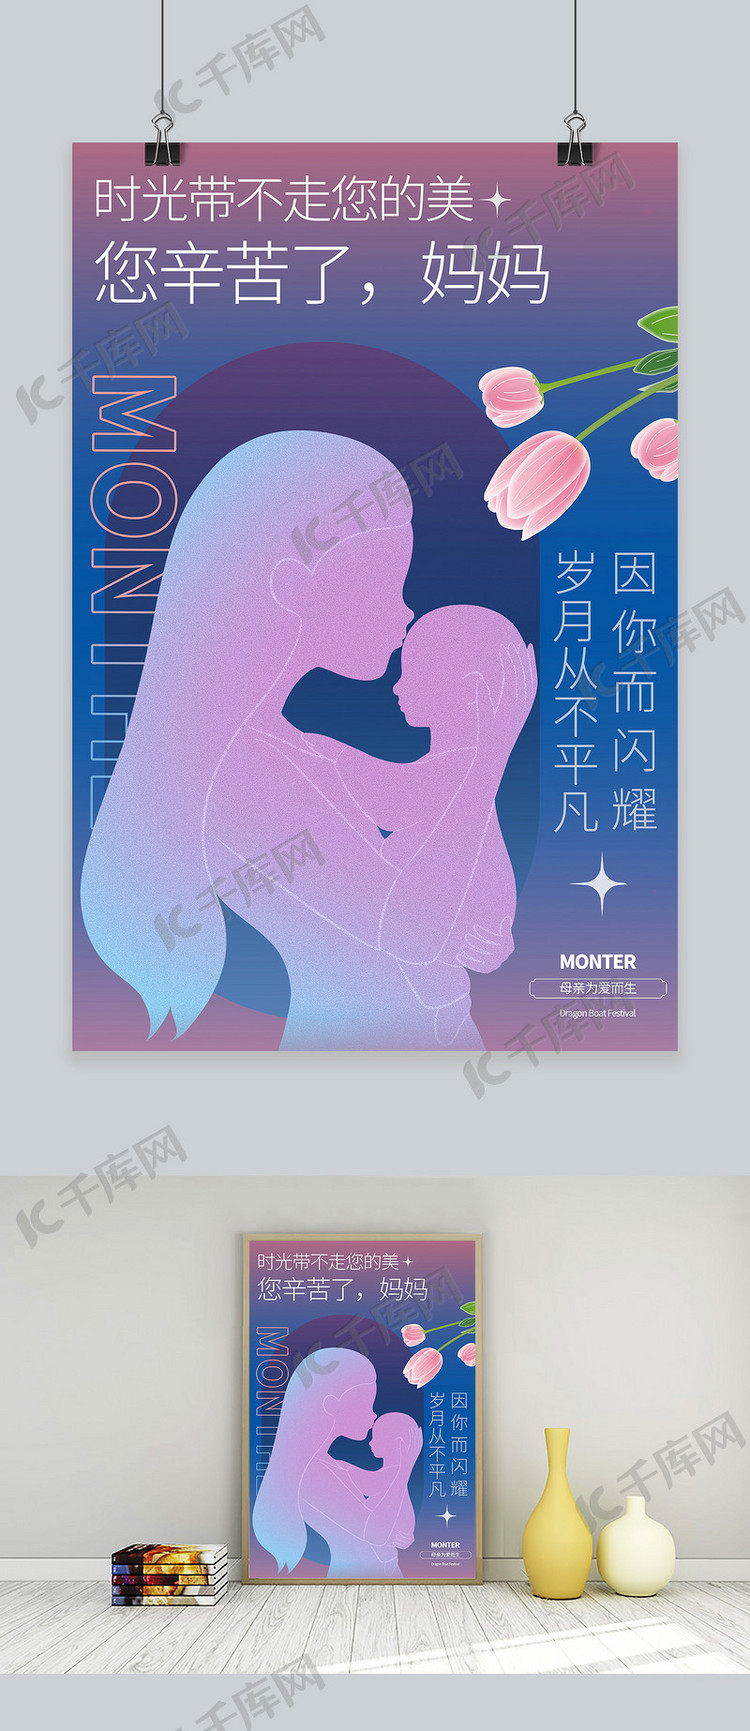 母亲节快乐 剪影 紫色商务风海报